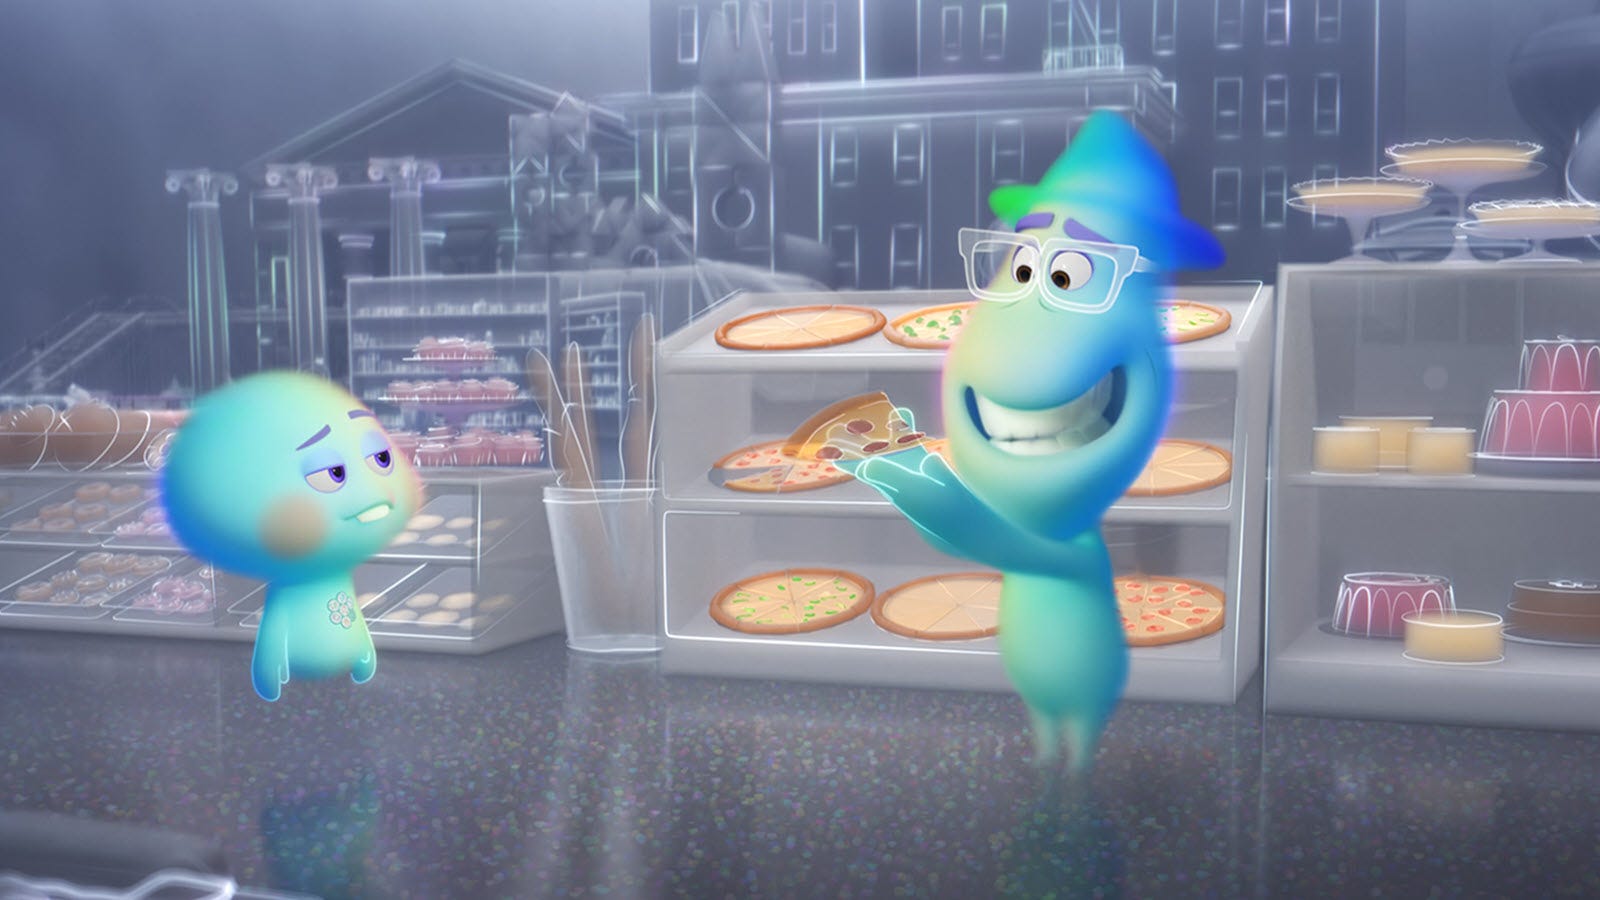 'Linh hồn' của Disney Pixar sẽ bỏ qua các rạp chiếu phim và đến thẳng Disney +